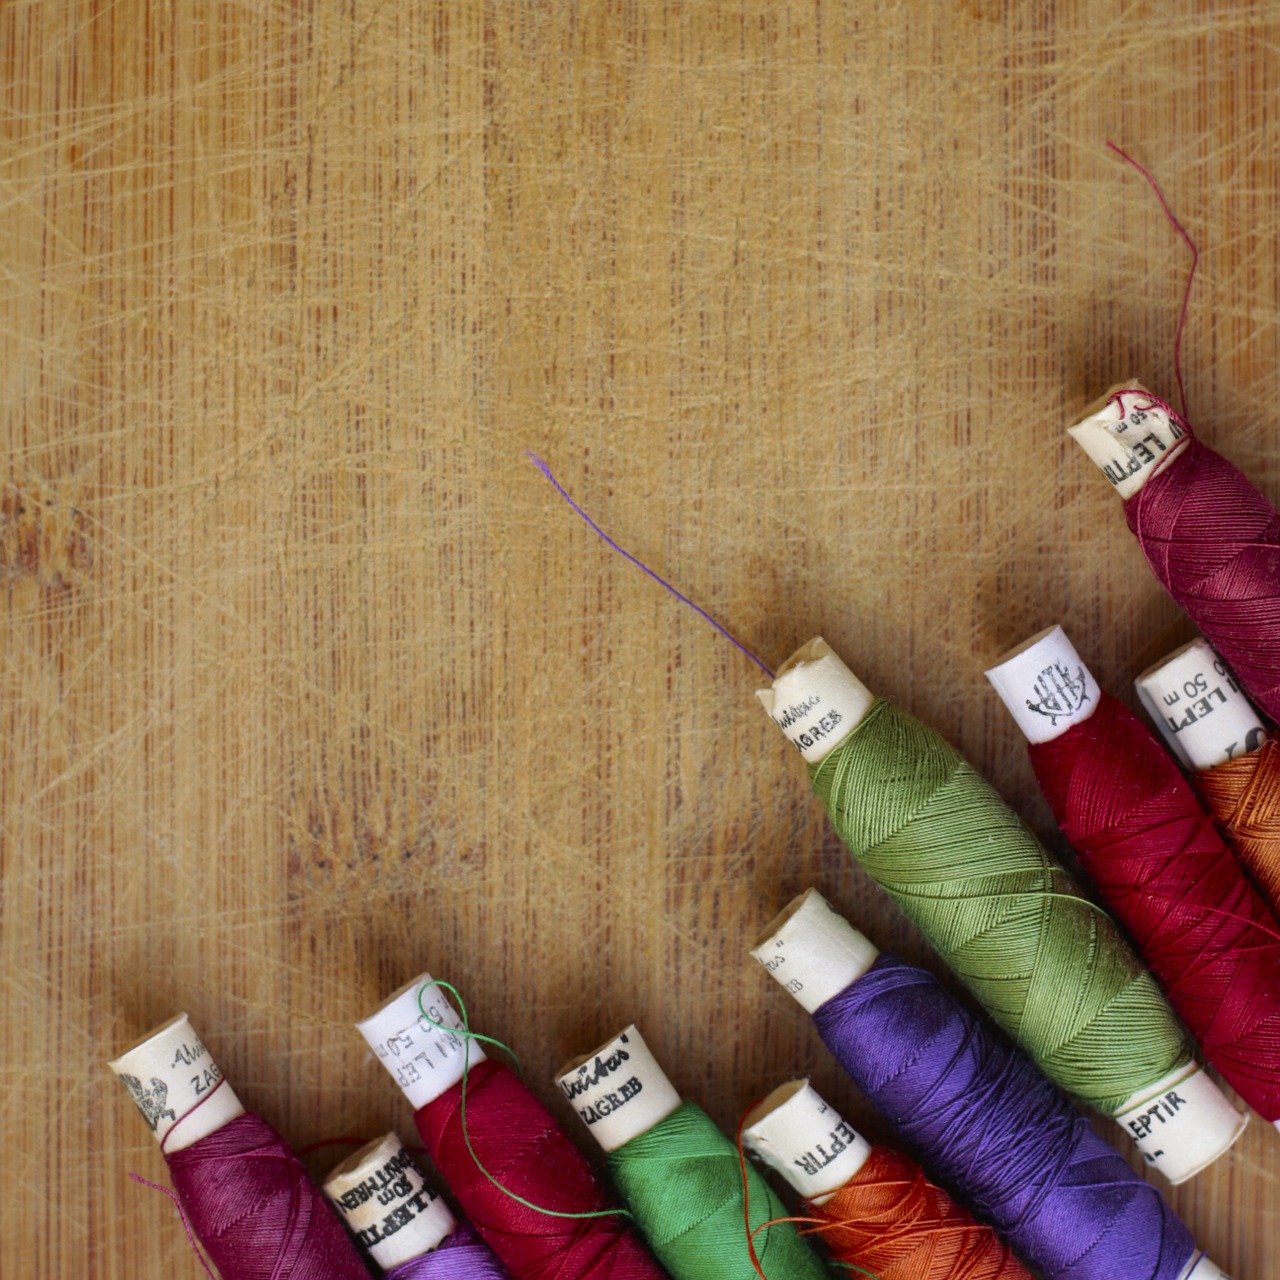 knit sewing handiwork free photo